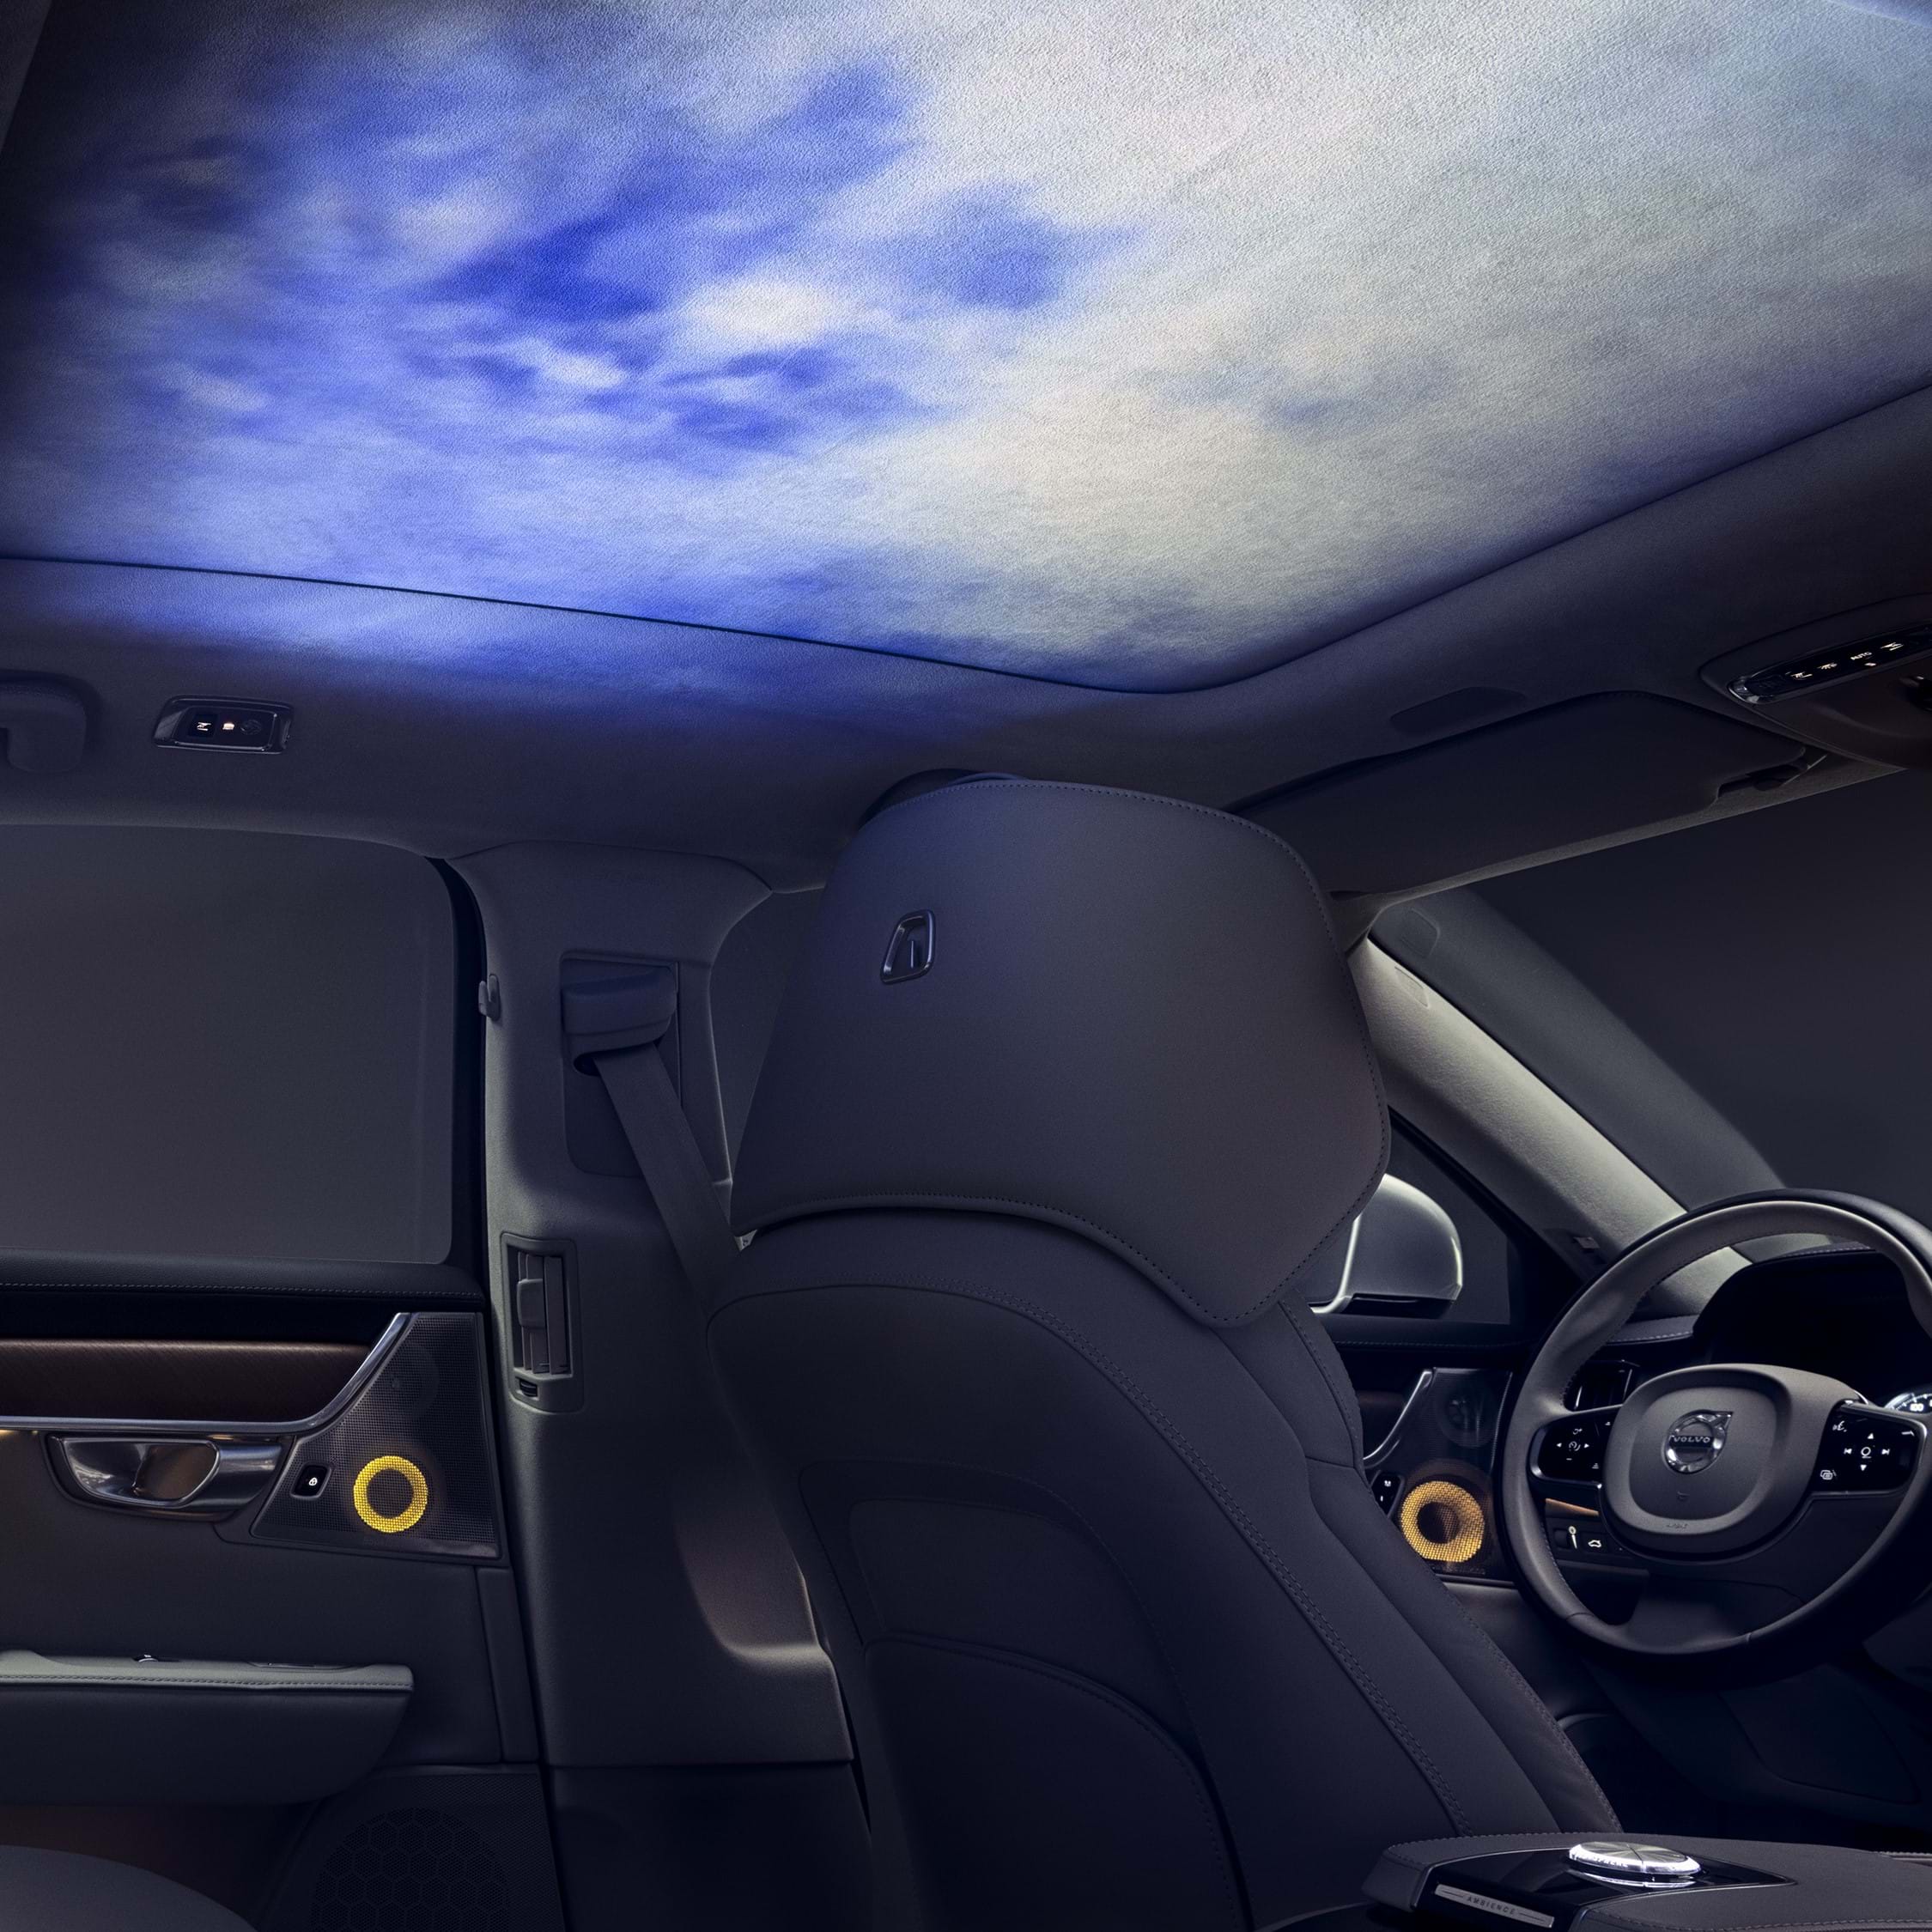 Interior de un Volvo con luz ambiental proyectada en el interior del techo